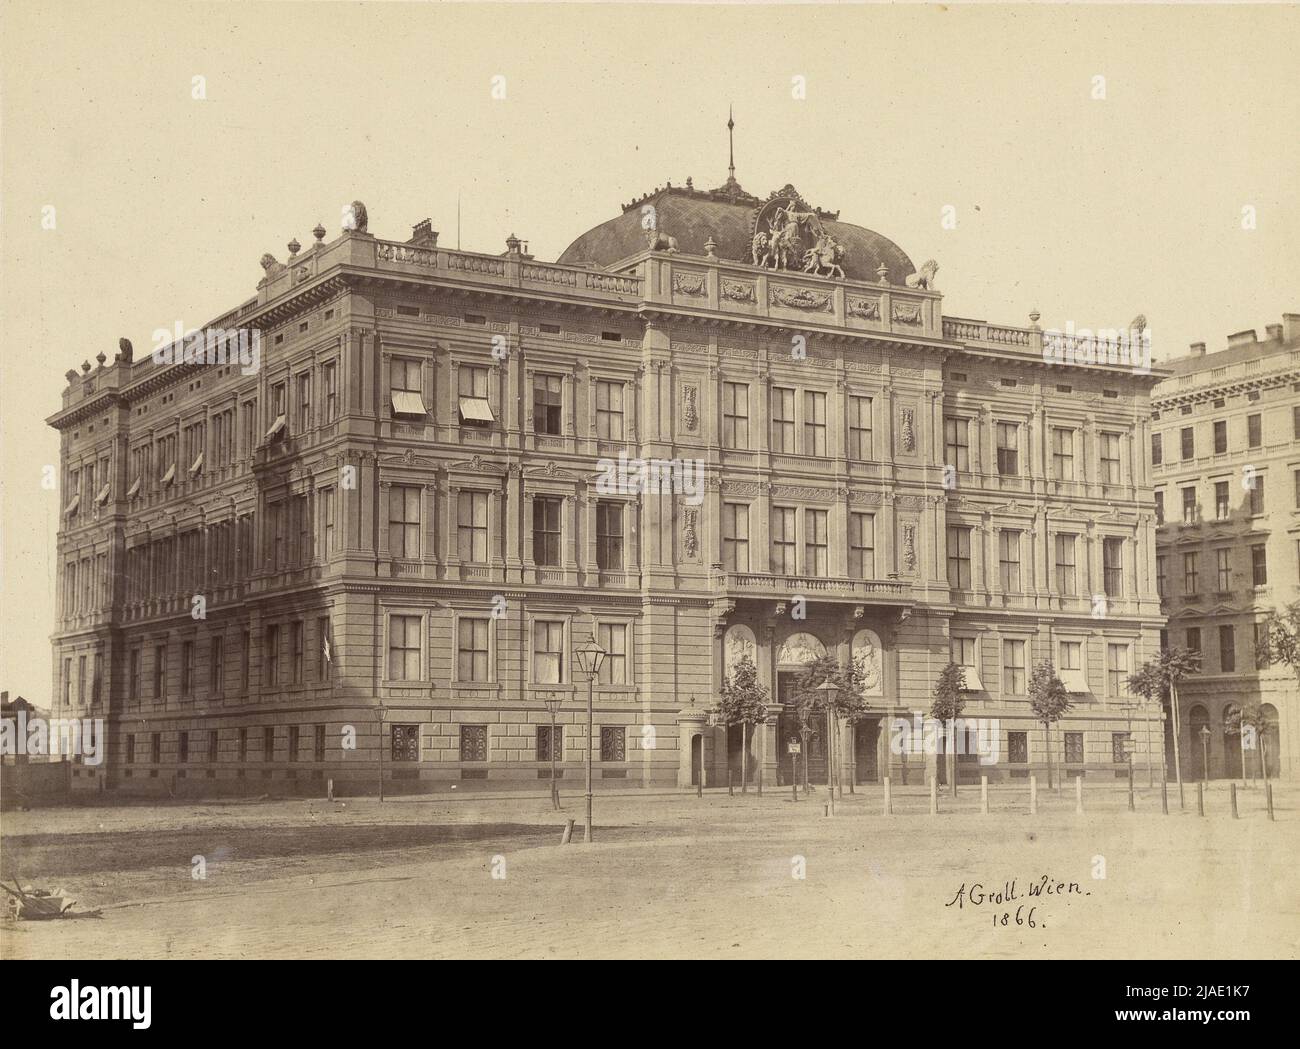 1., Kärntner Ring 16 - Schloss des Herzogs von Württemberg (später: Hotel Imperial). Andreas Groll (1812-1872), Fotograf Stockfoto